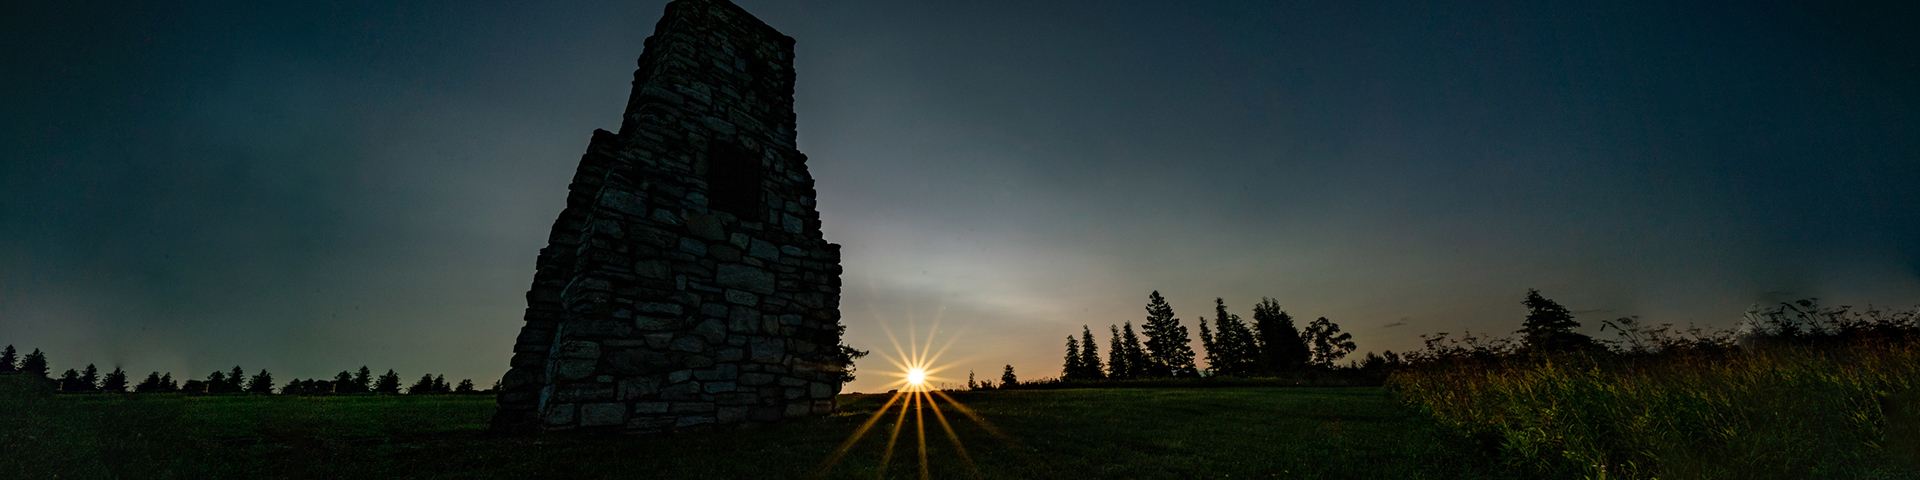 Sunrise over the ruins of Fort St. Joseph